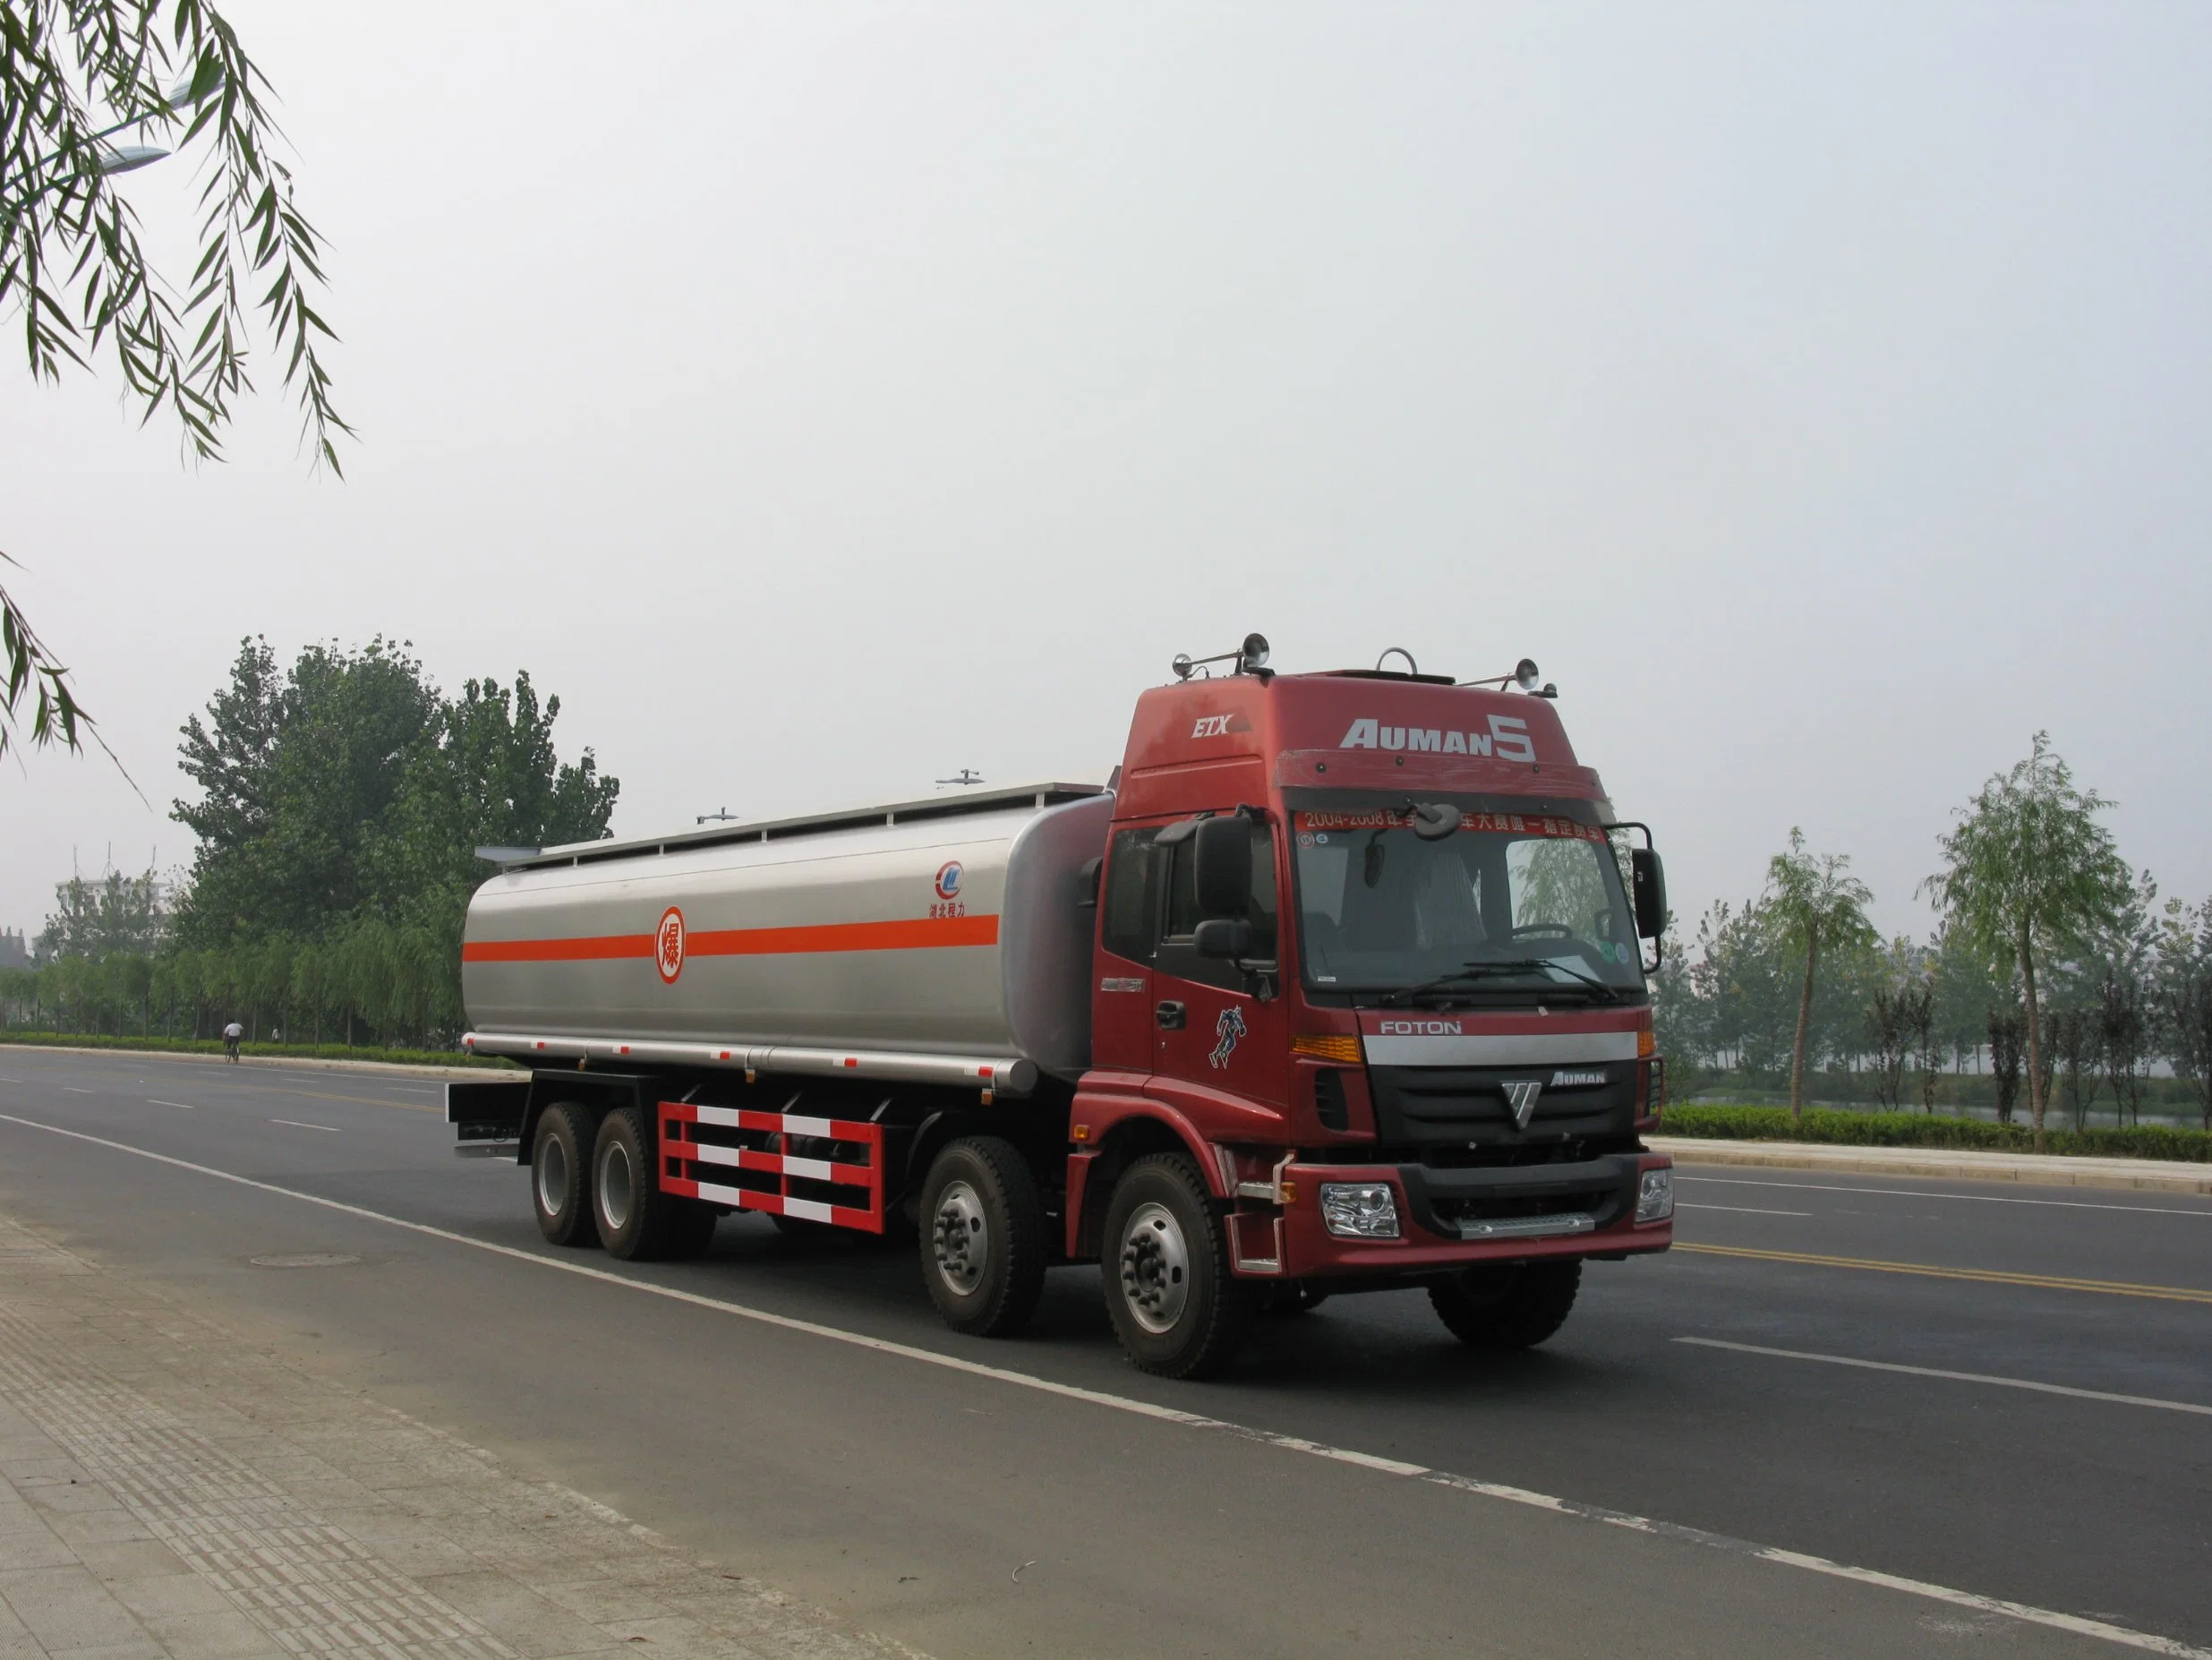 Foton Auman 8X4 camión de combustible de 30 toneladas 30000L tanque de aceite Transporte transporte transporte camiones de gasolina con dispensador